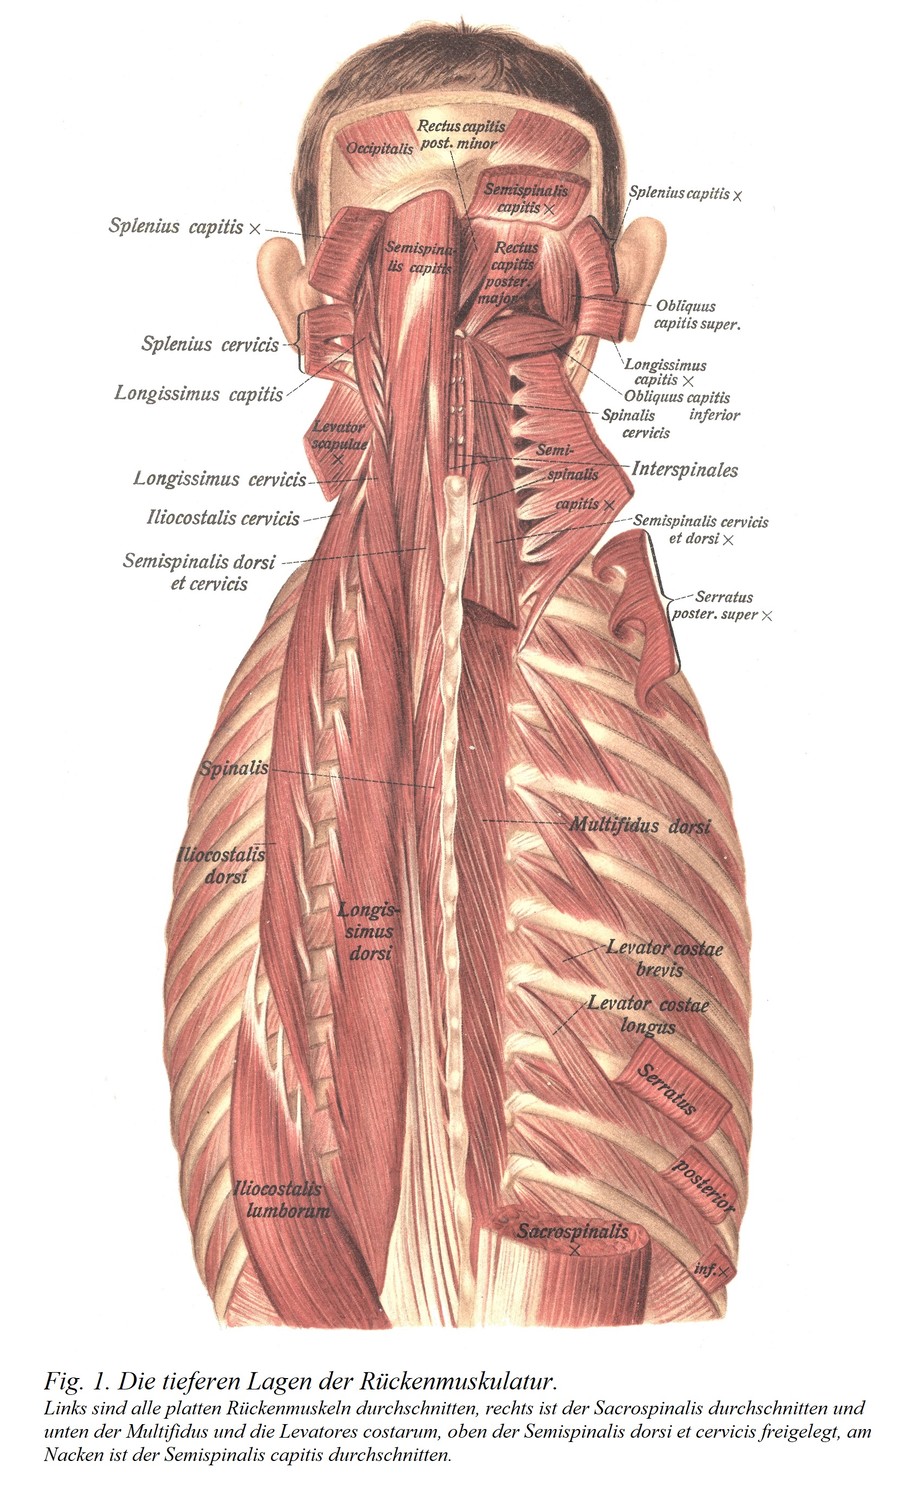 Глубокие слои мышц спины. Все плоские мышцы спины пересекаются слева, крестцово-остистая мышца пересекается справа, а снизу обнажаются многораздельная и поднимающая ребра мышцы, сверху обнажаются полуостистая мышца спины и шейки матки и полуостистая мышца головы пересекается на шее.